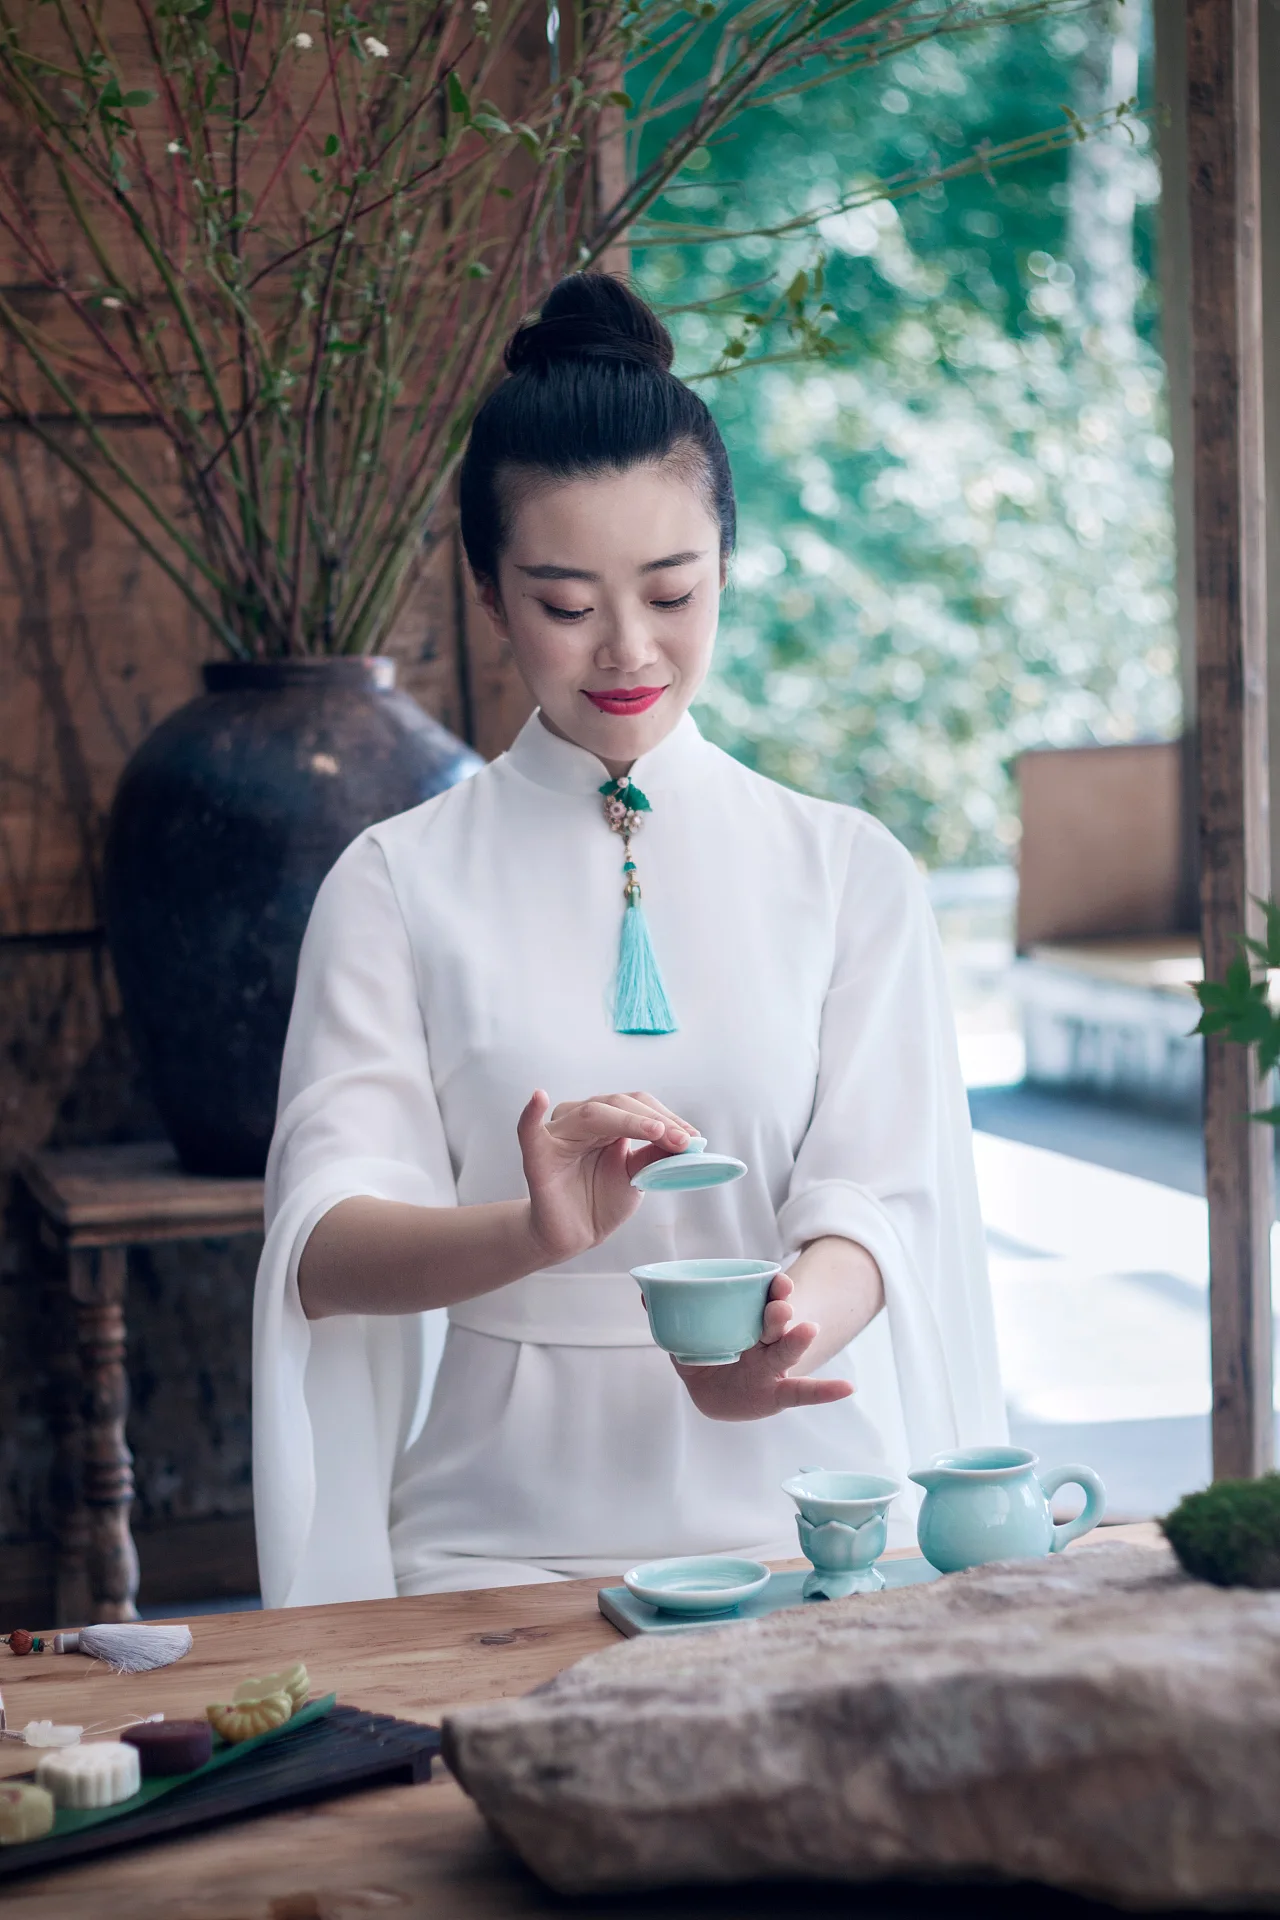 中式生活美学课程——茶道